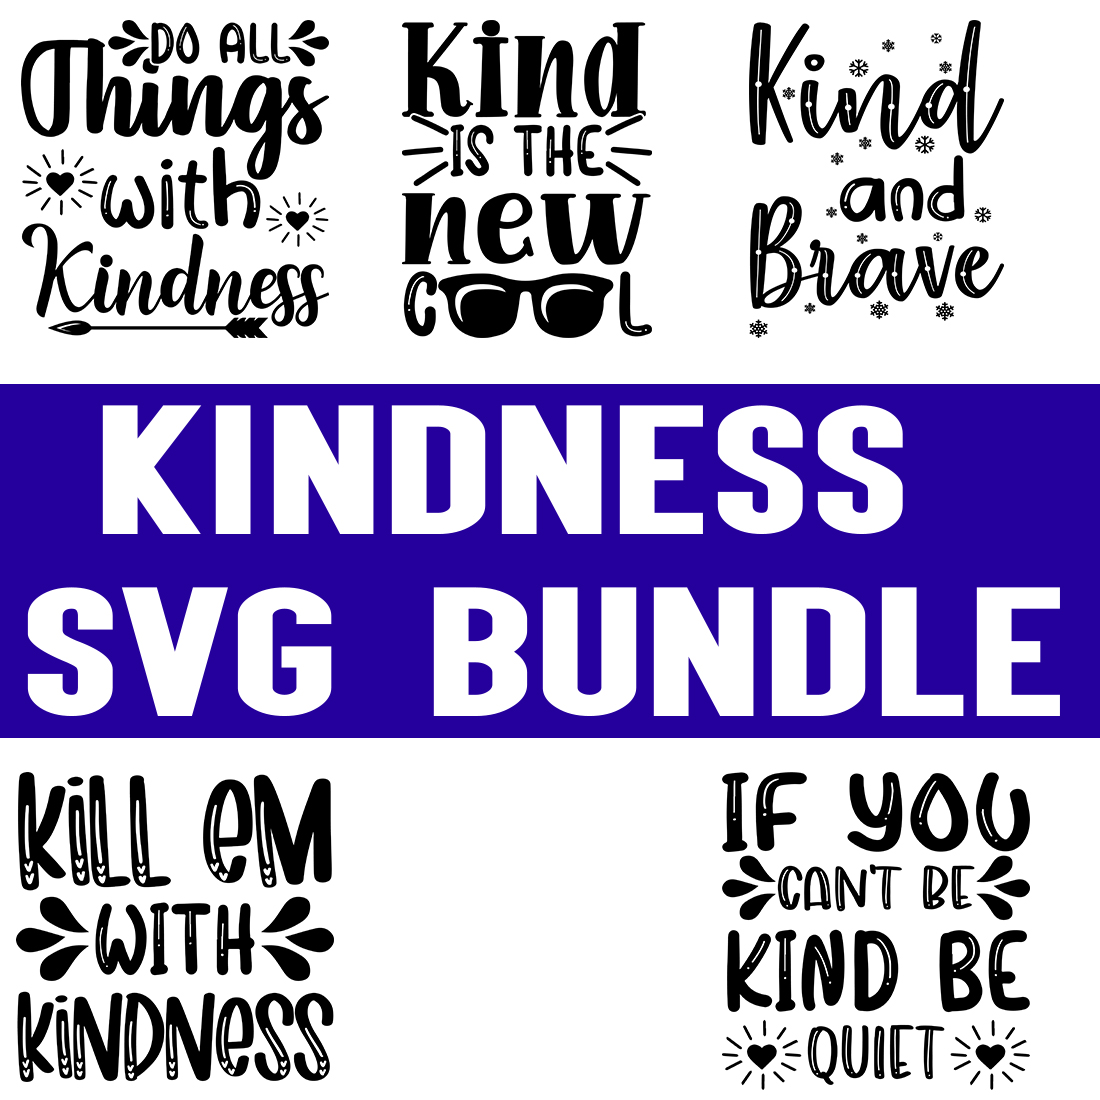 Kindness svg Bundle cover image.